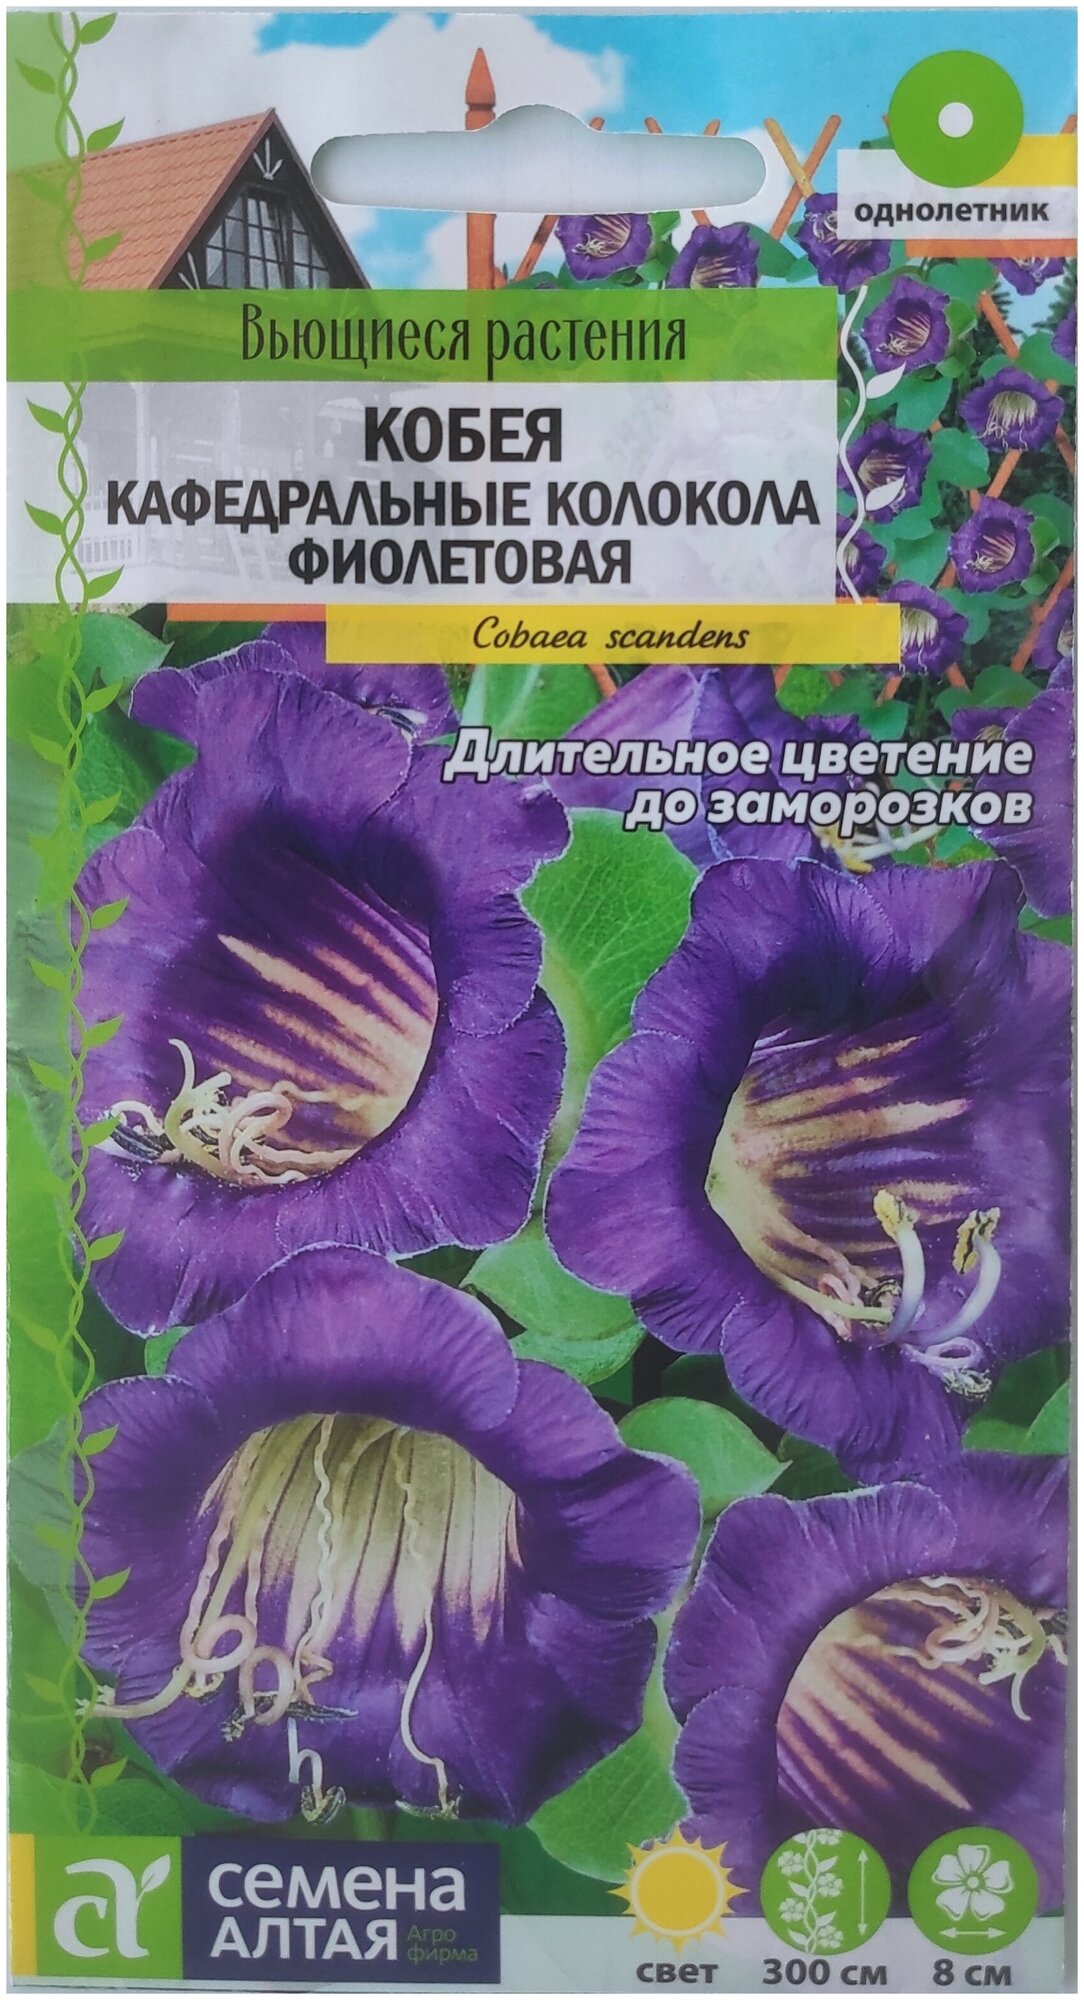 Семена Кобея лазающая Кафедральные Колокола фиолетовая Семена Алтая 5 шт